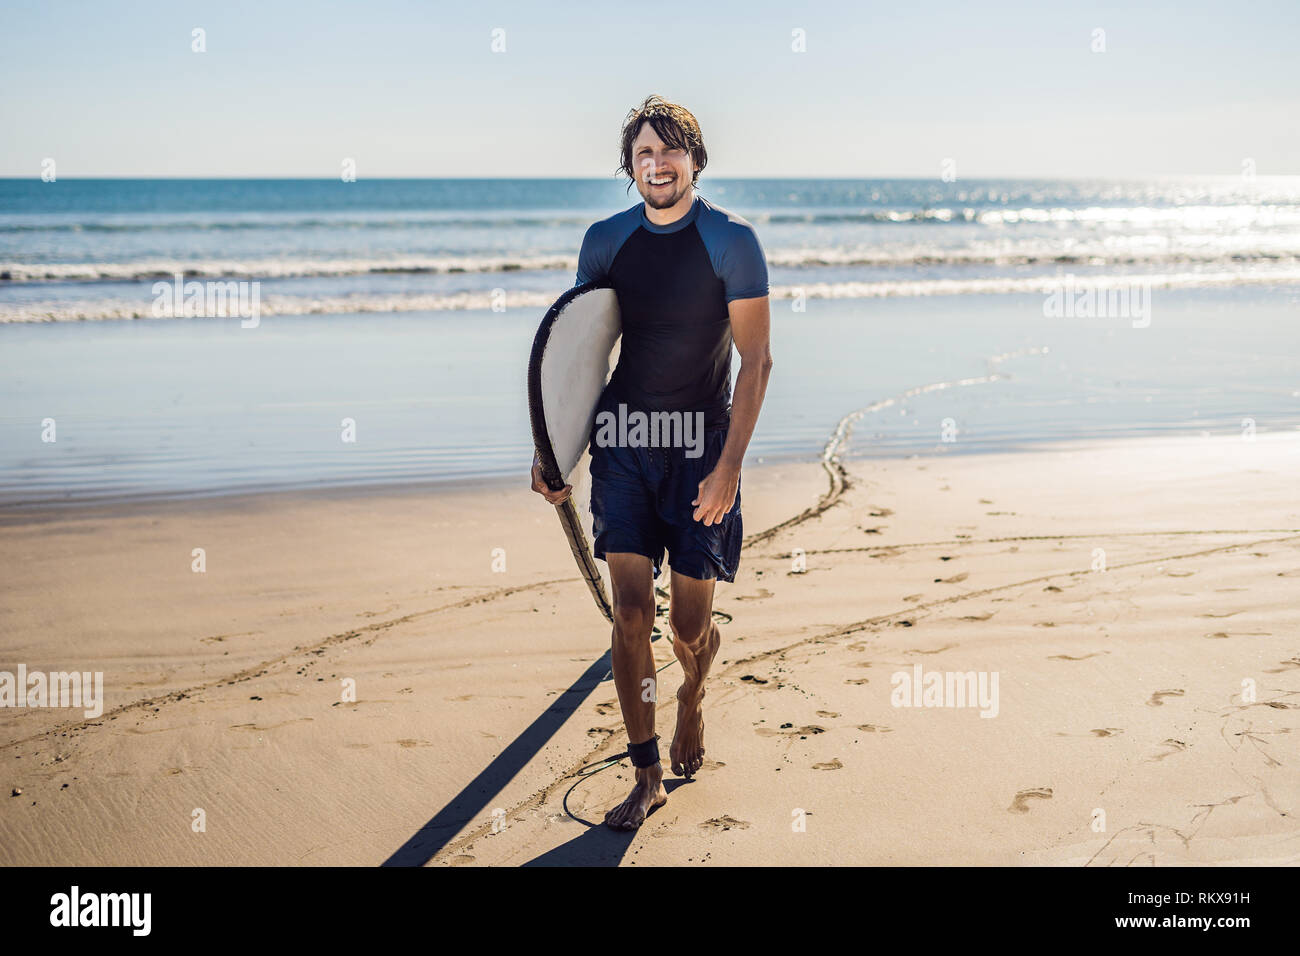 Beau jeune sportif posant avec sa planche de surf sous le bras dans sa combinaison sur une plage tropicale de sable Banque D'Images